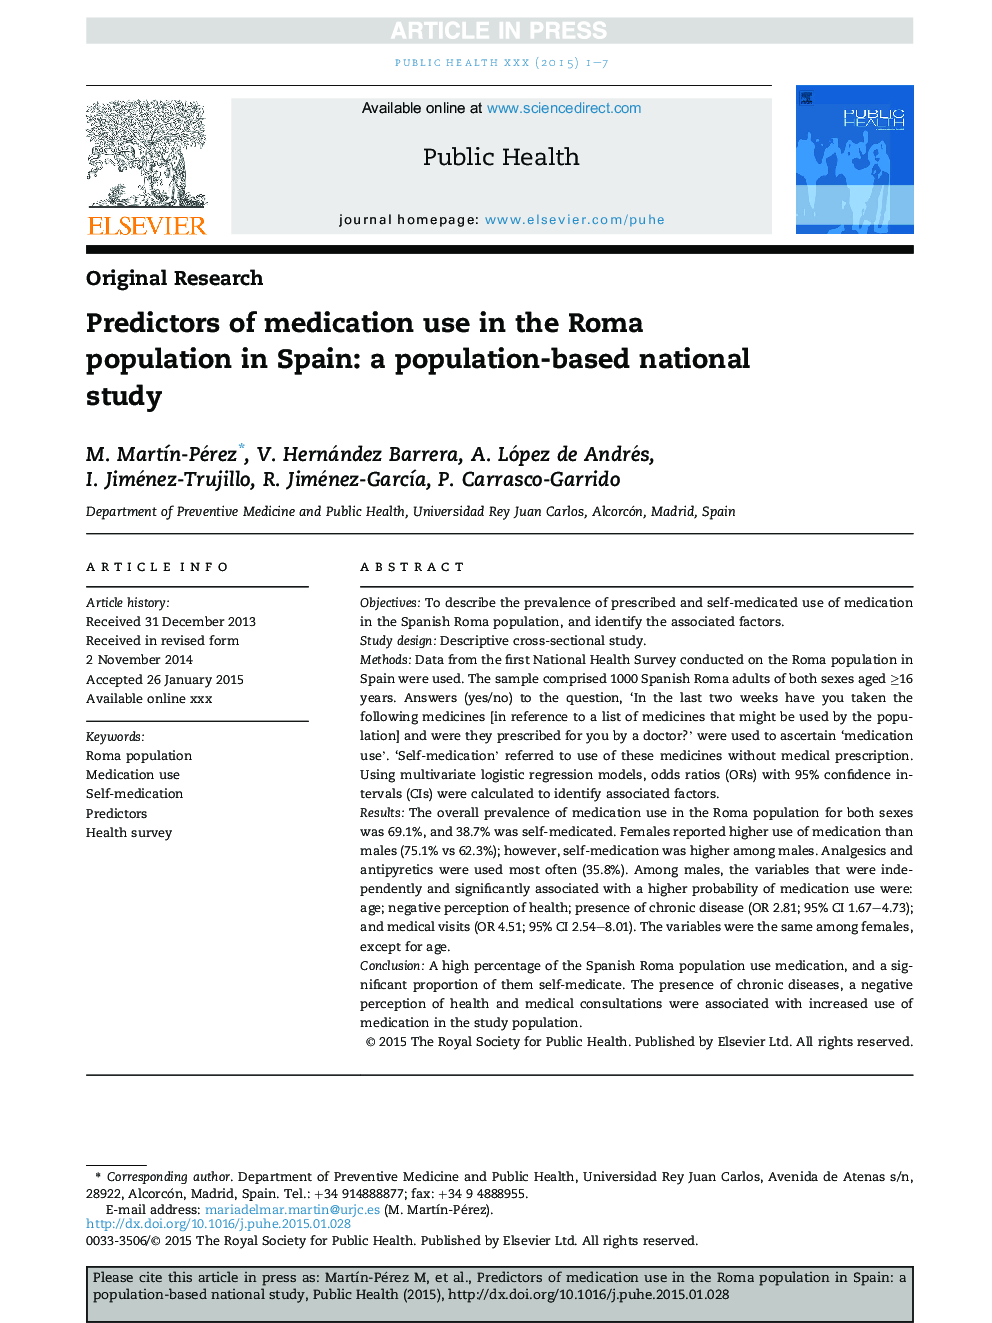 پیش بینی دارو در جمعیت رم در اسپانیا: مطالعه ملی مبتنی بر جمعیت است 